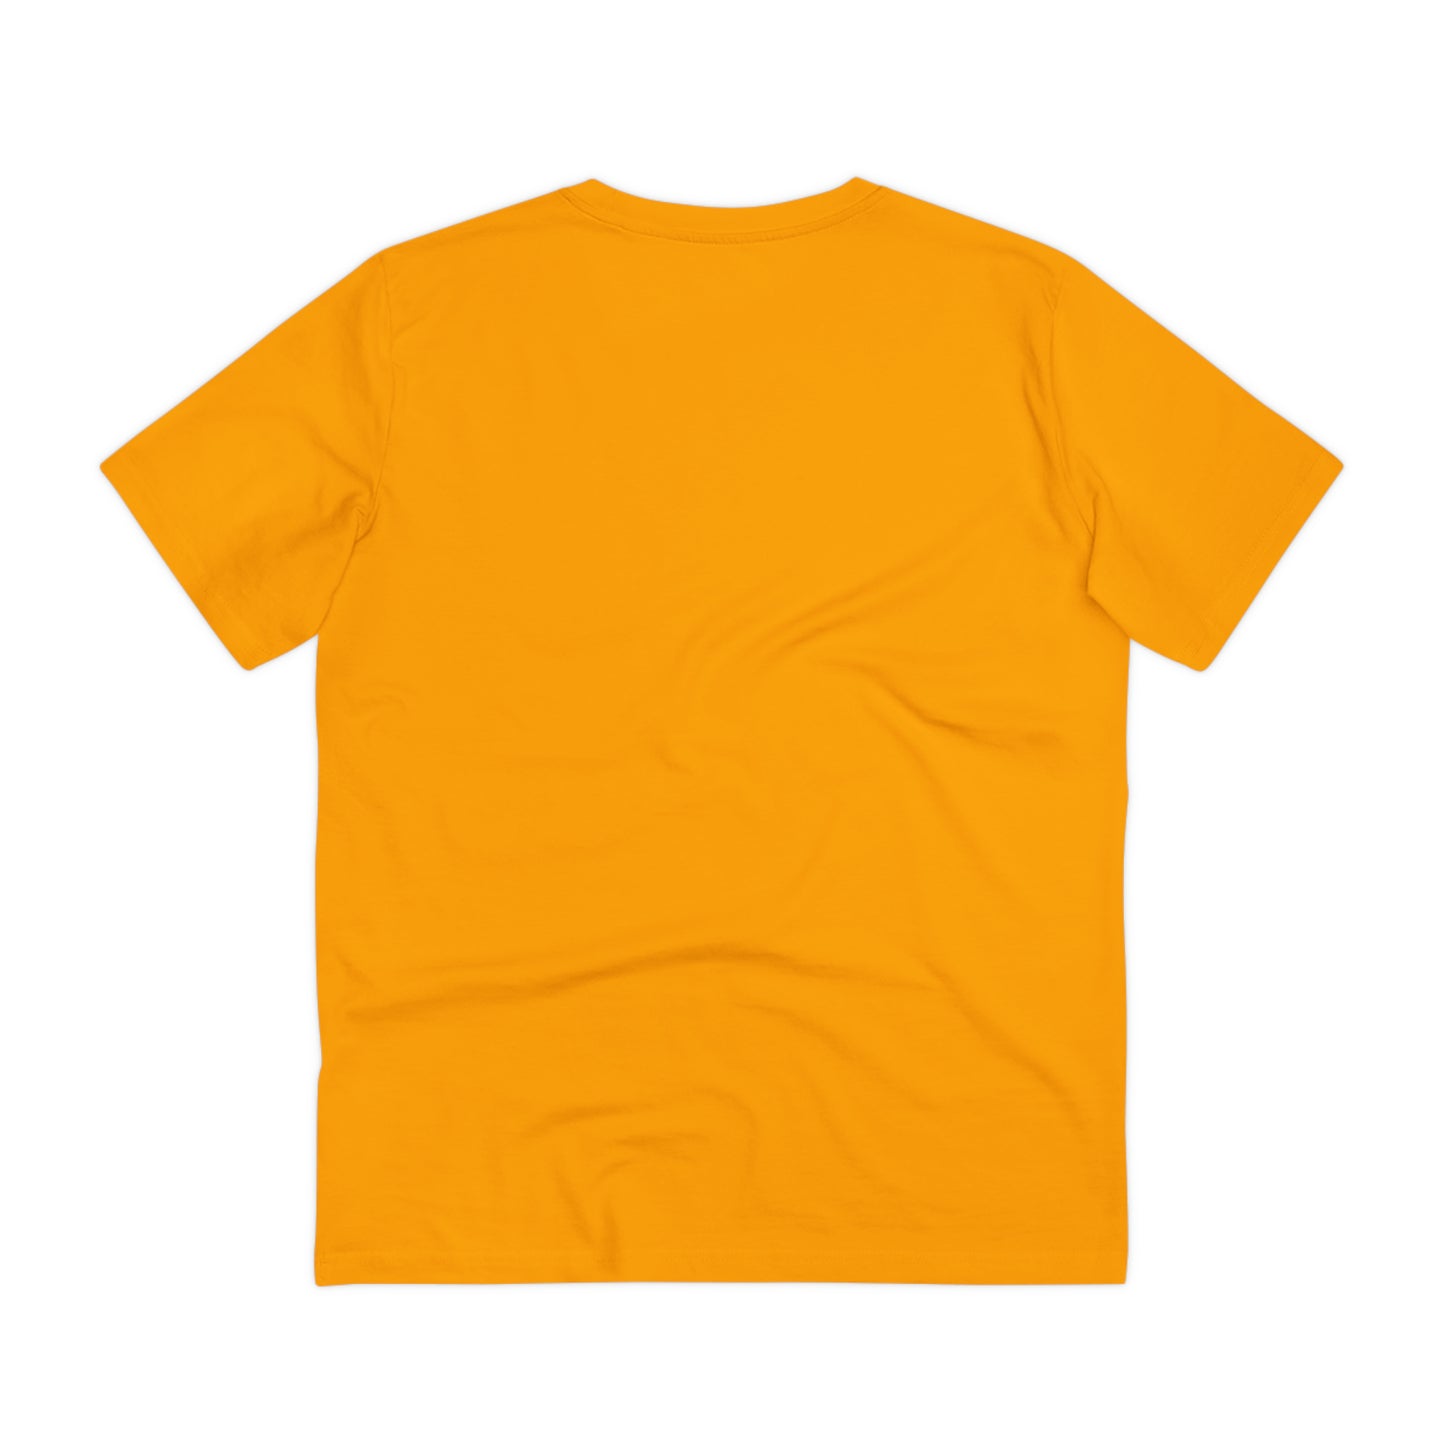 Organisk T-shirt - Trolden Petanque